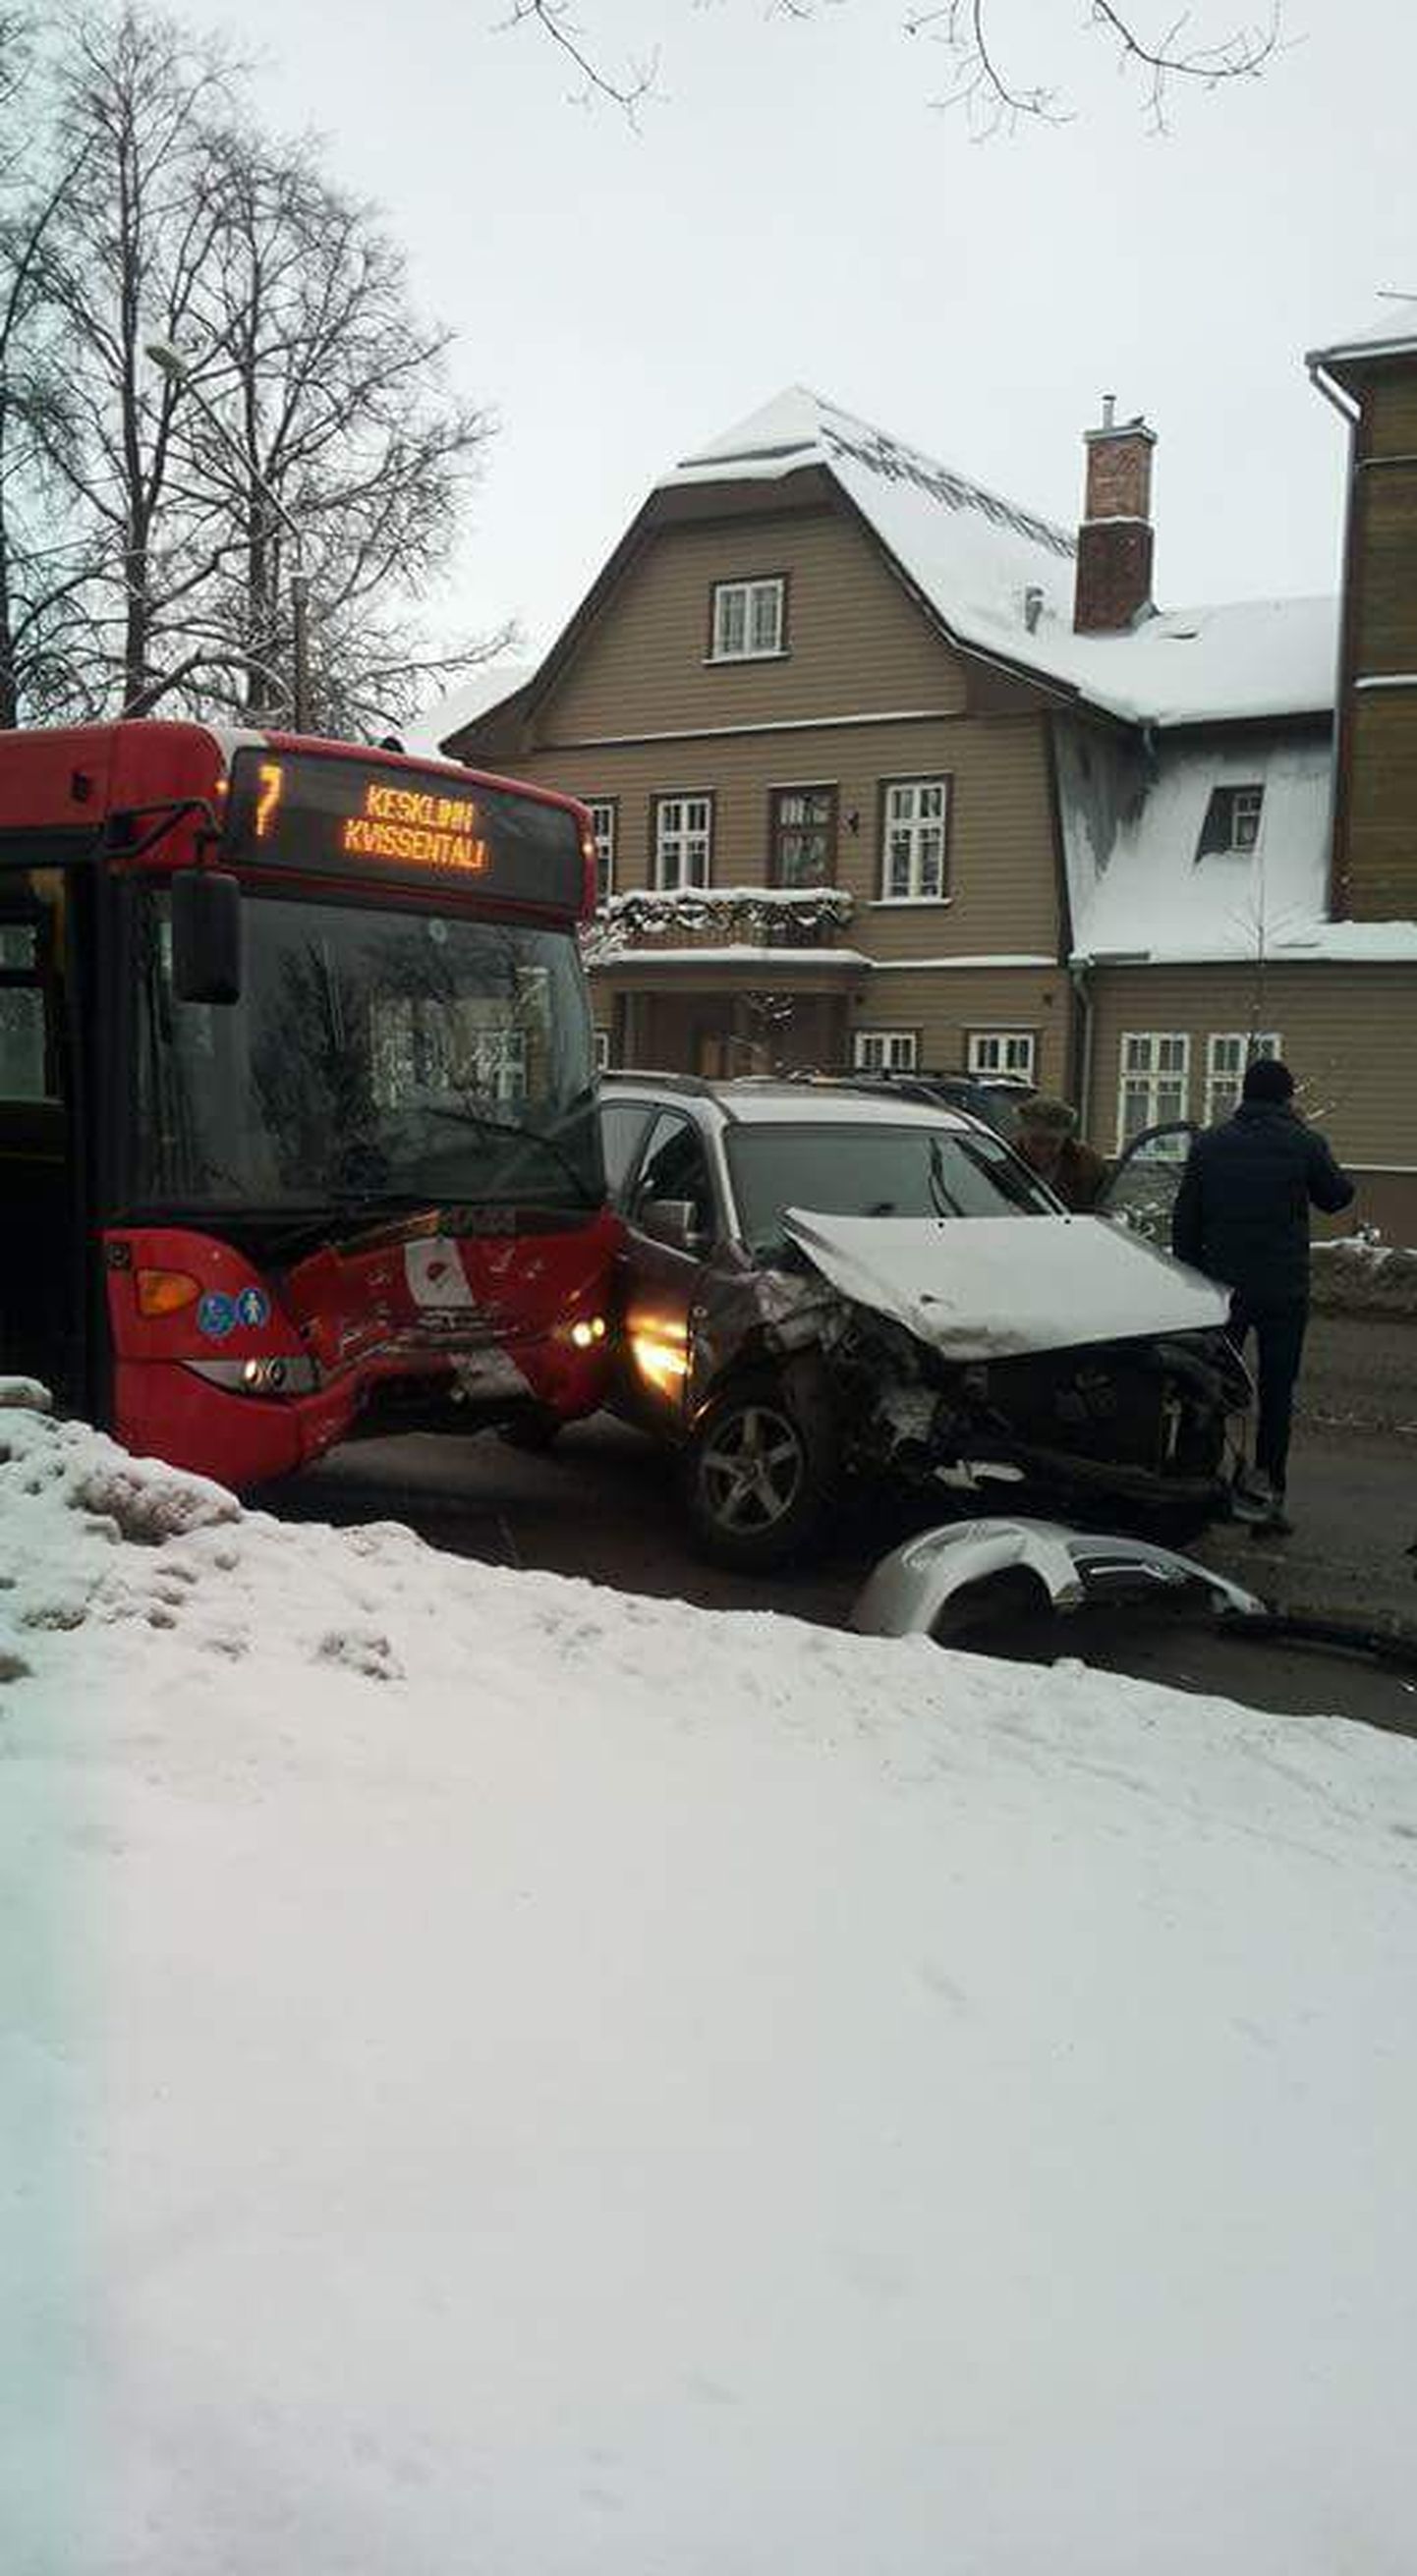 Tartus Riia tänaval sattusid 18. jaanuari pärastlõunal kokkupõrkesse linnaliinibuss ja sõiduauto.